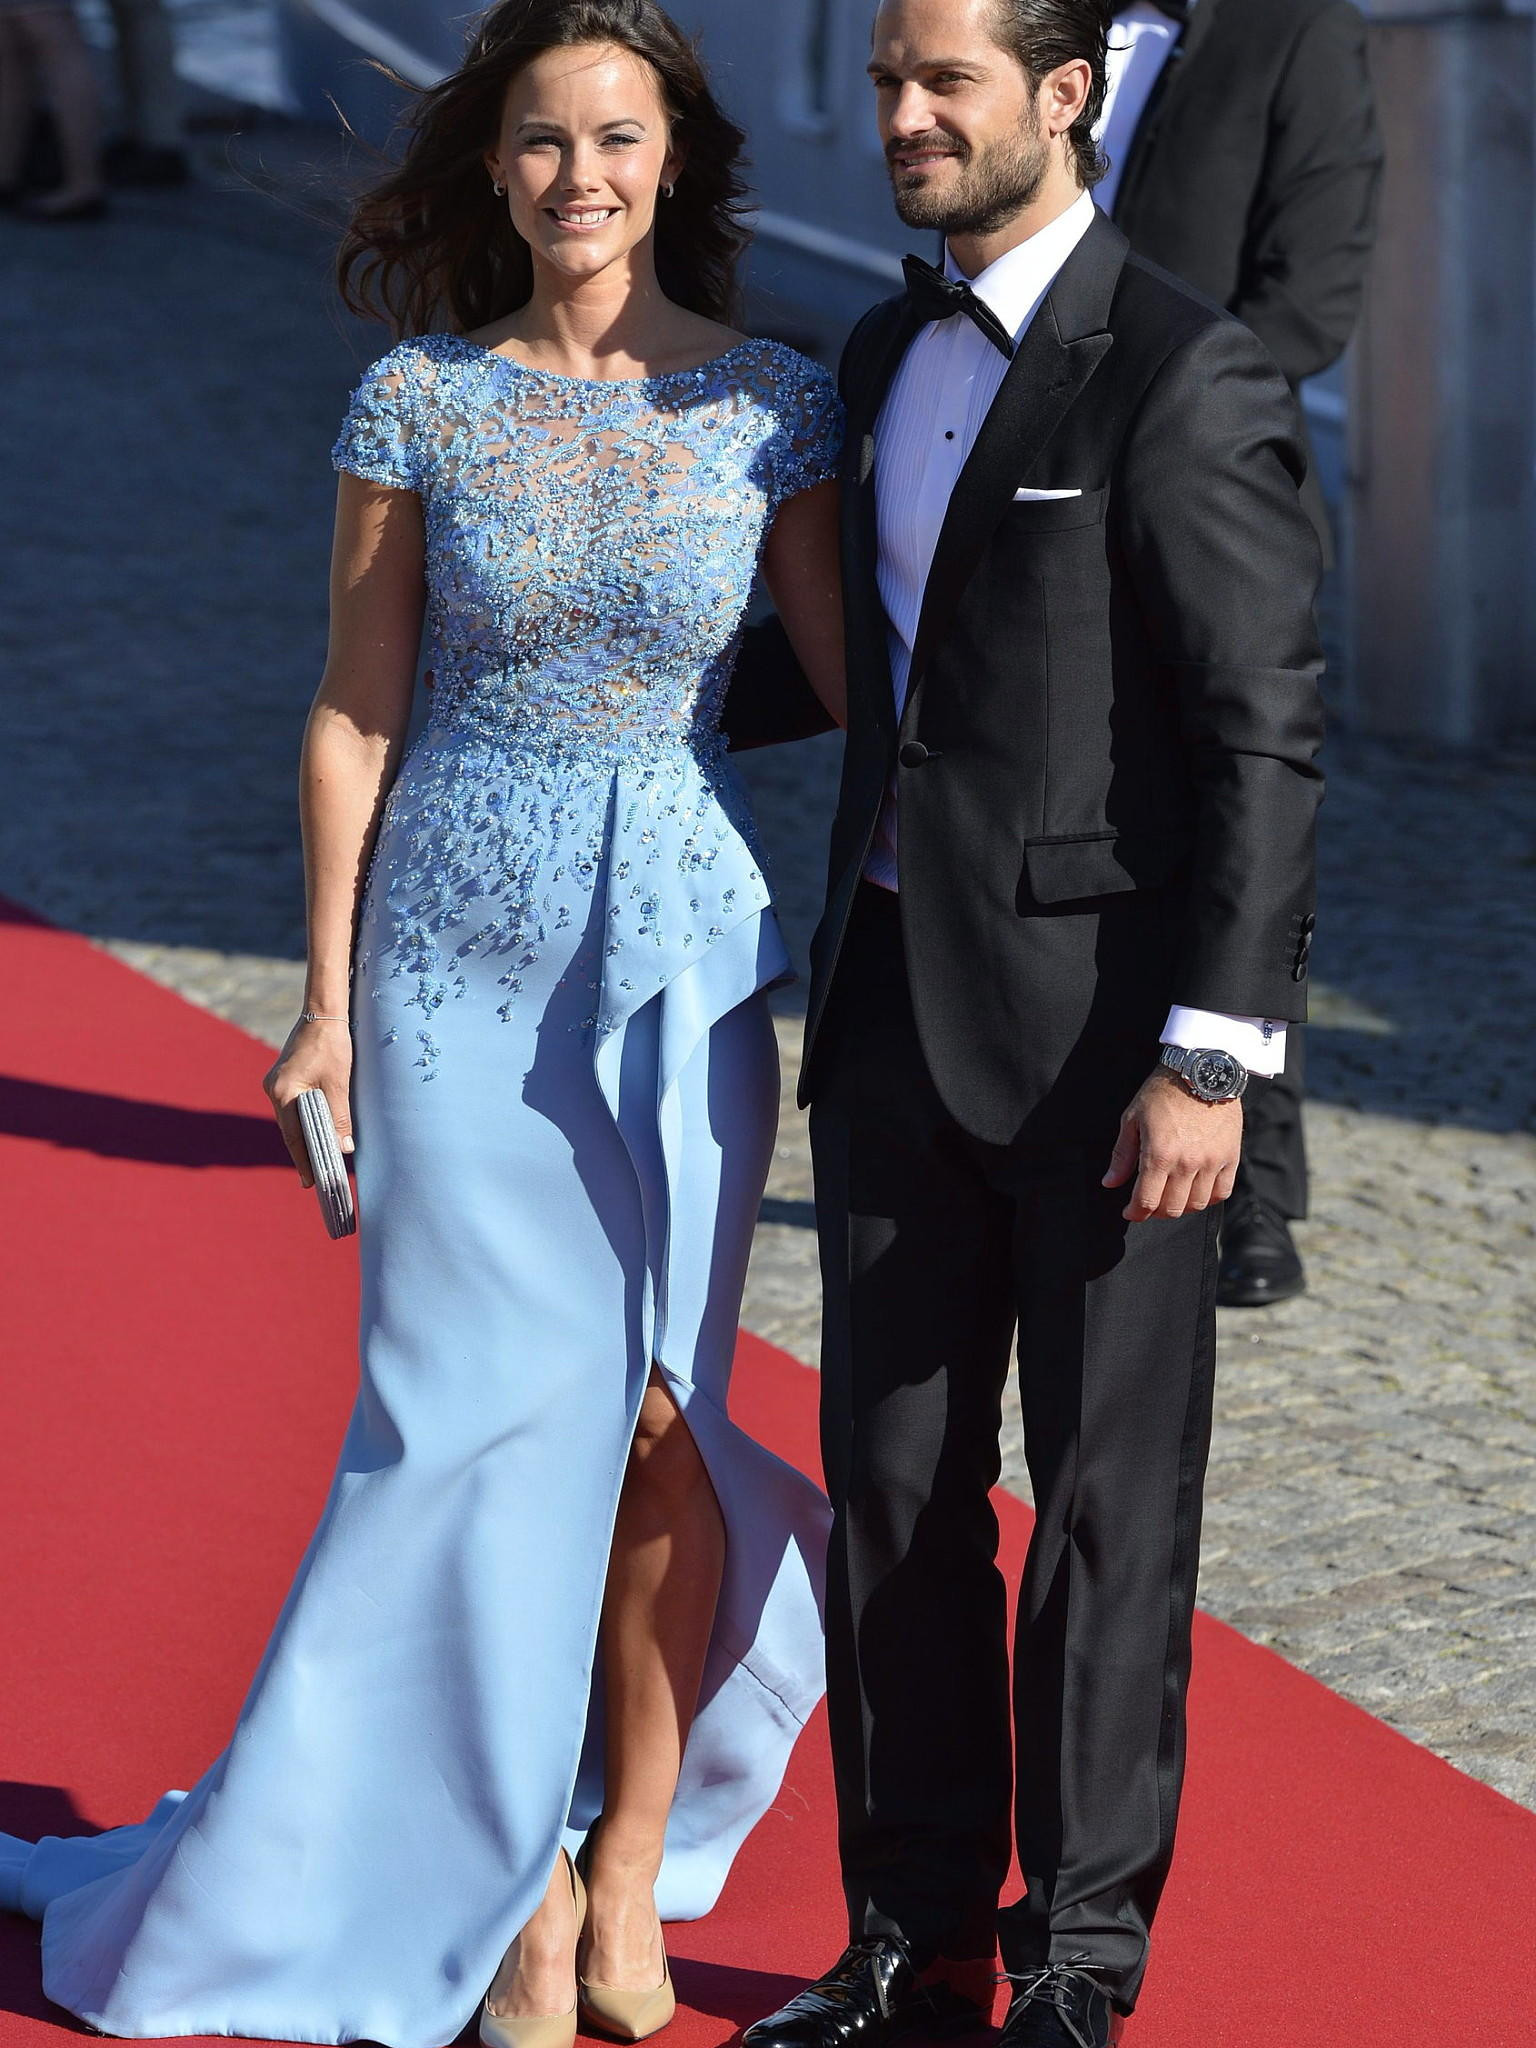 Hochzeit Schweden Sofia
 Glamouröser Polterabend von Sofia Hellqvist und Prinz Carl